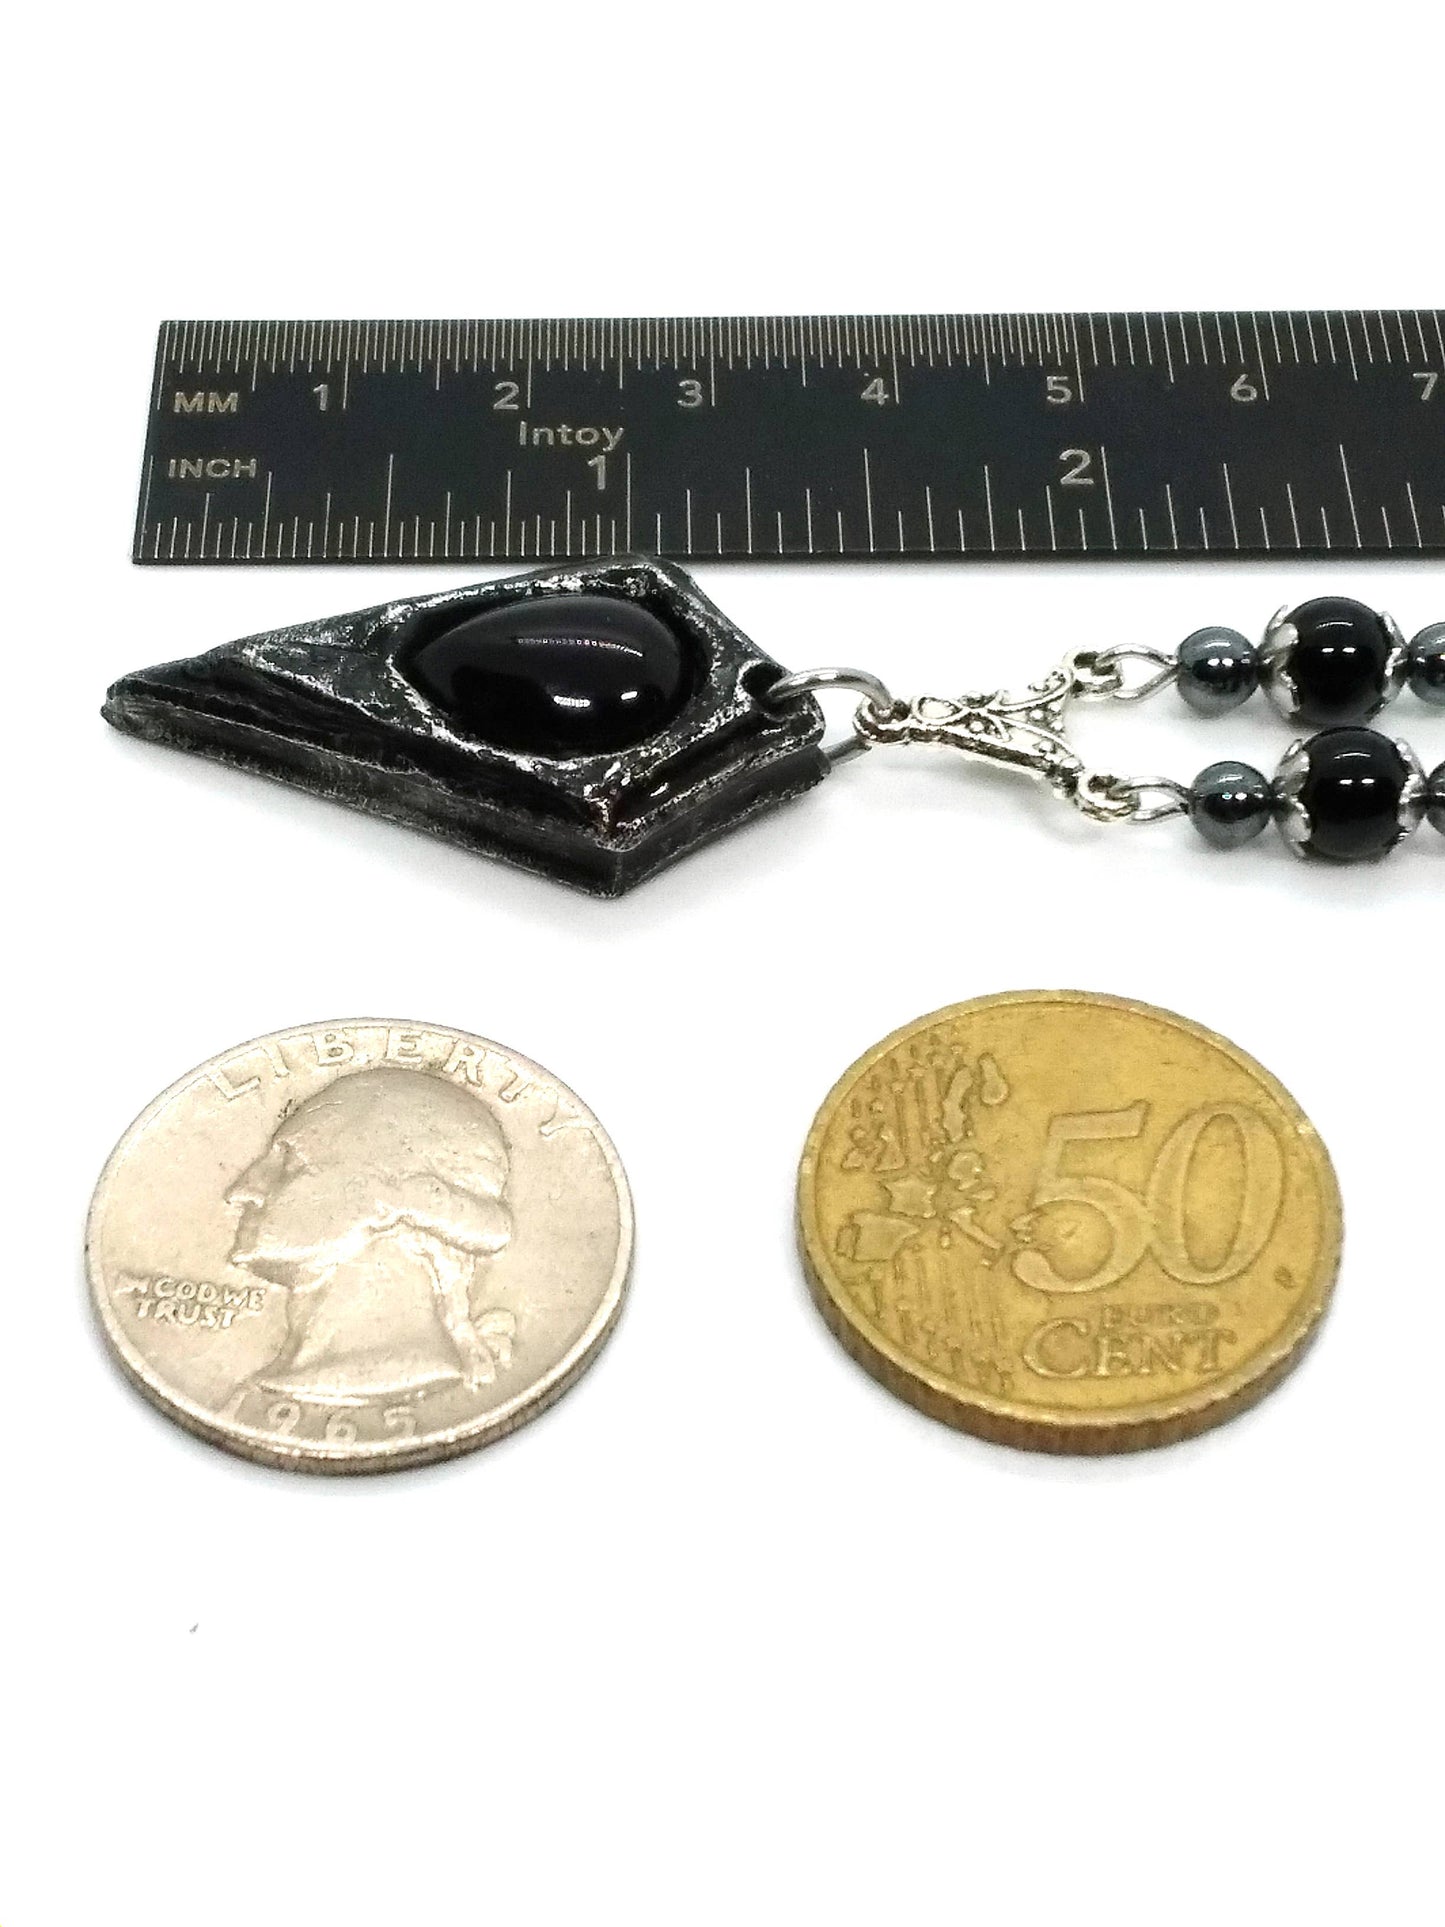 Pendulum Necklace with Stone Options: Onyx